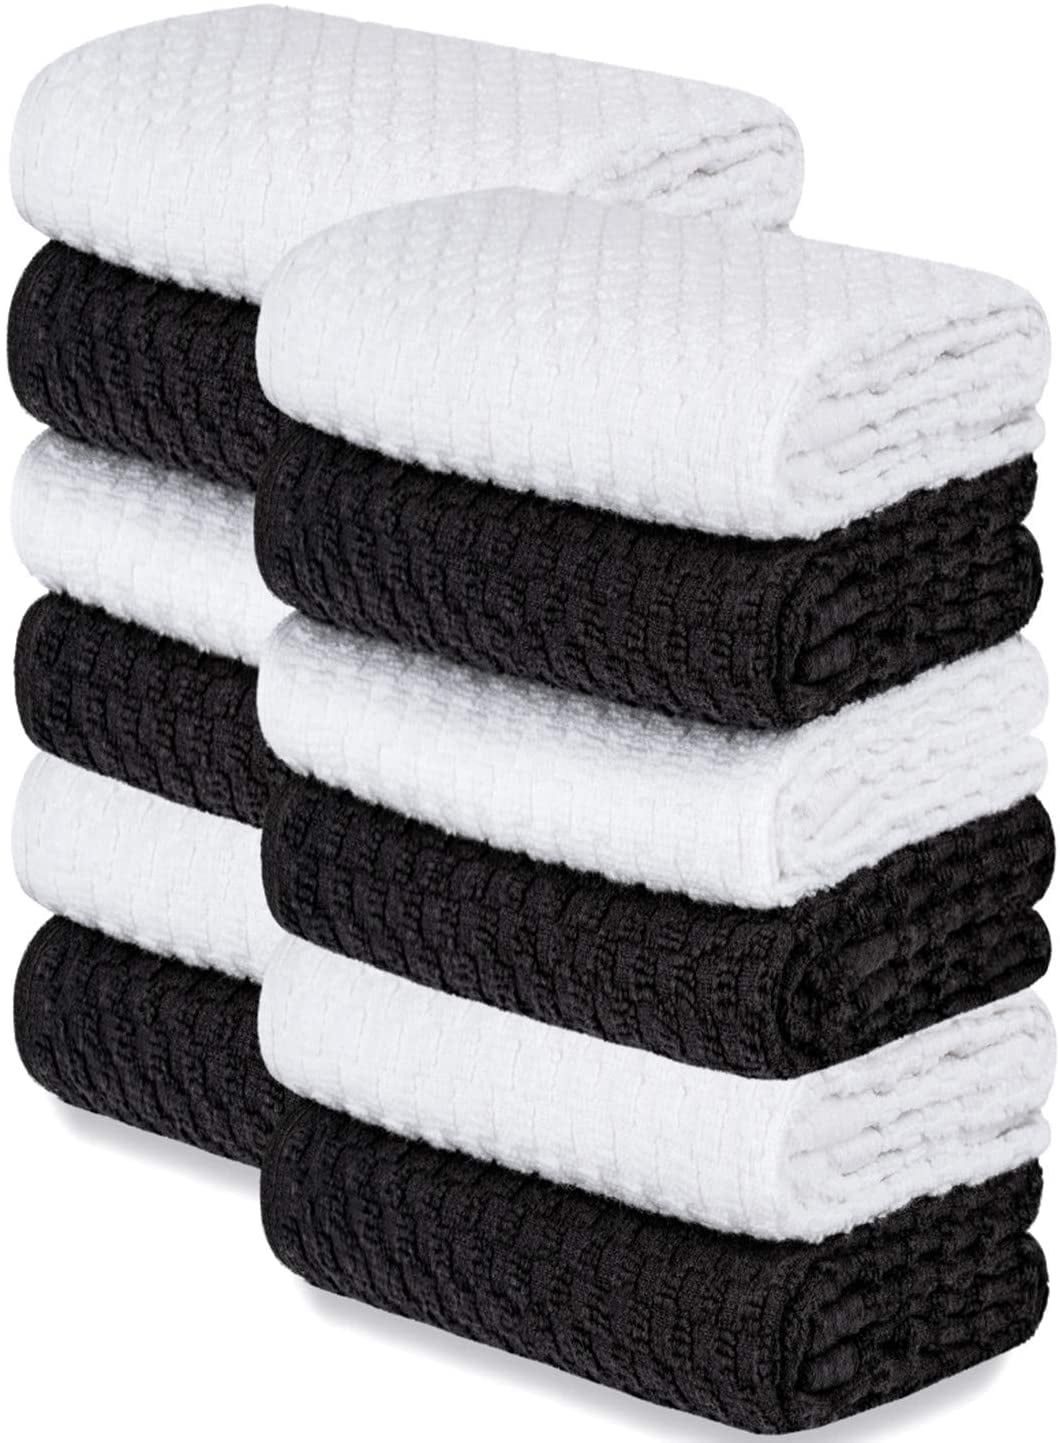 12 Pack Kitchen Towel Dish Cloth Super Absorbent Tea Towels 15x25" Arrow Design. 